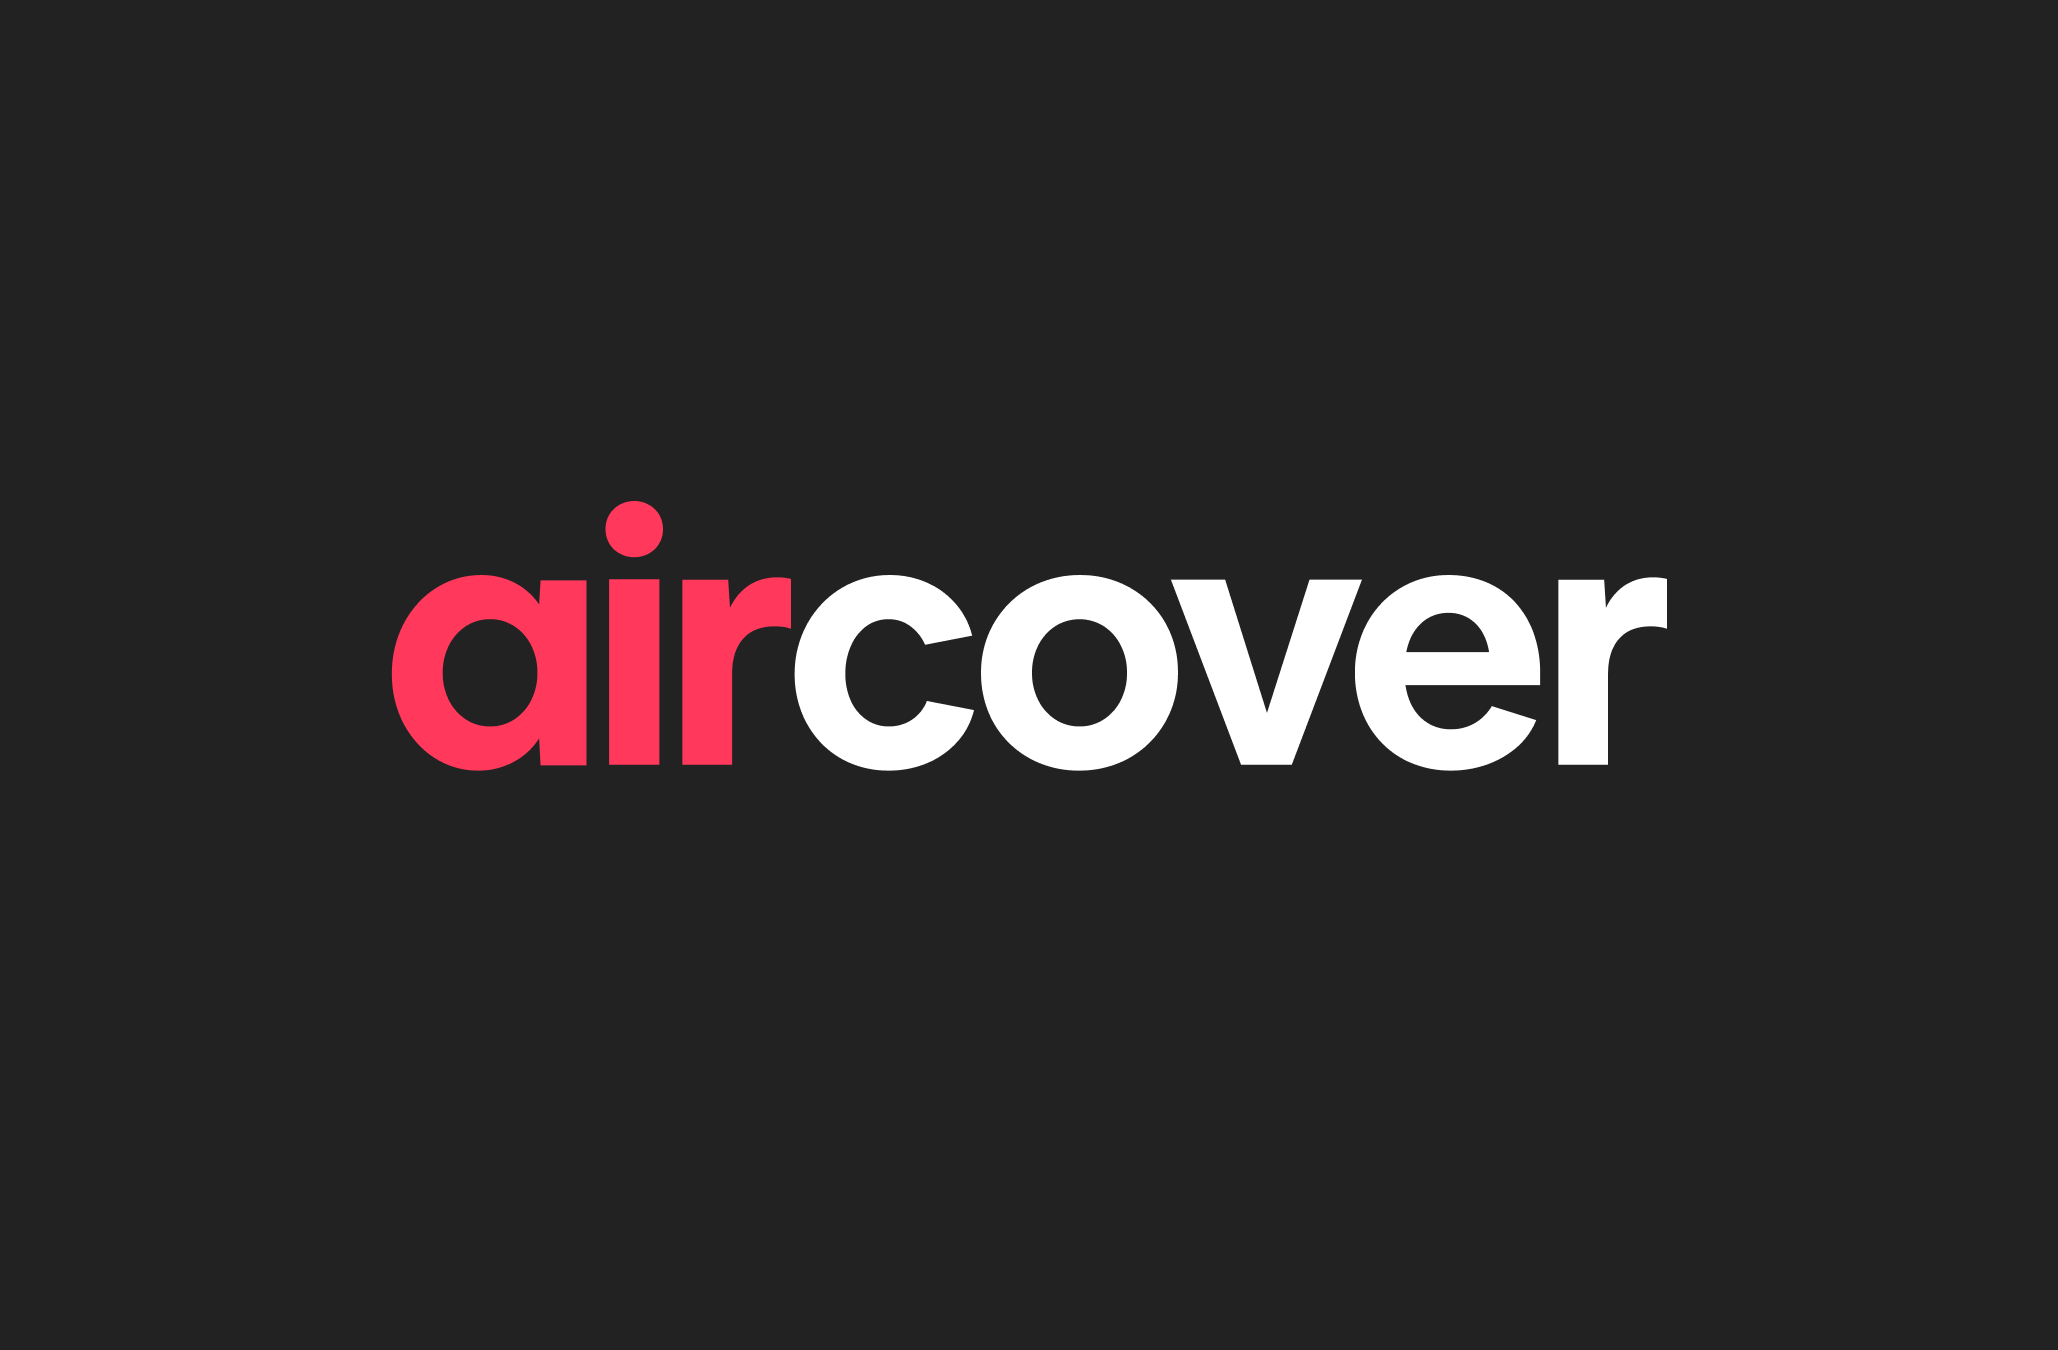 AirCover-logoet med røde og hvide bogstaver på en sort baggrund.